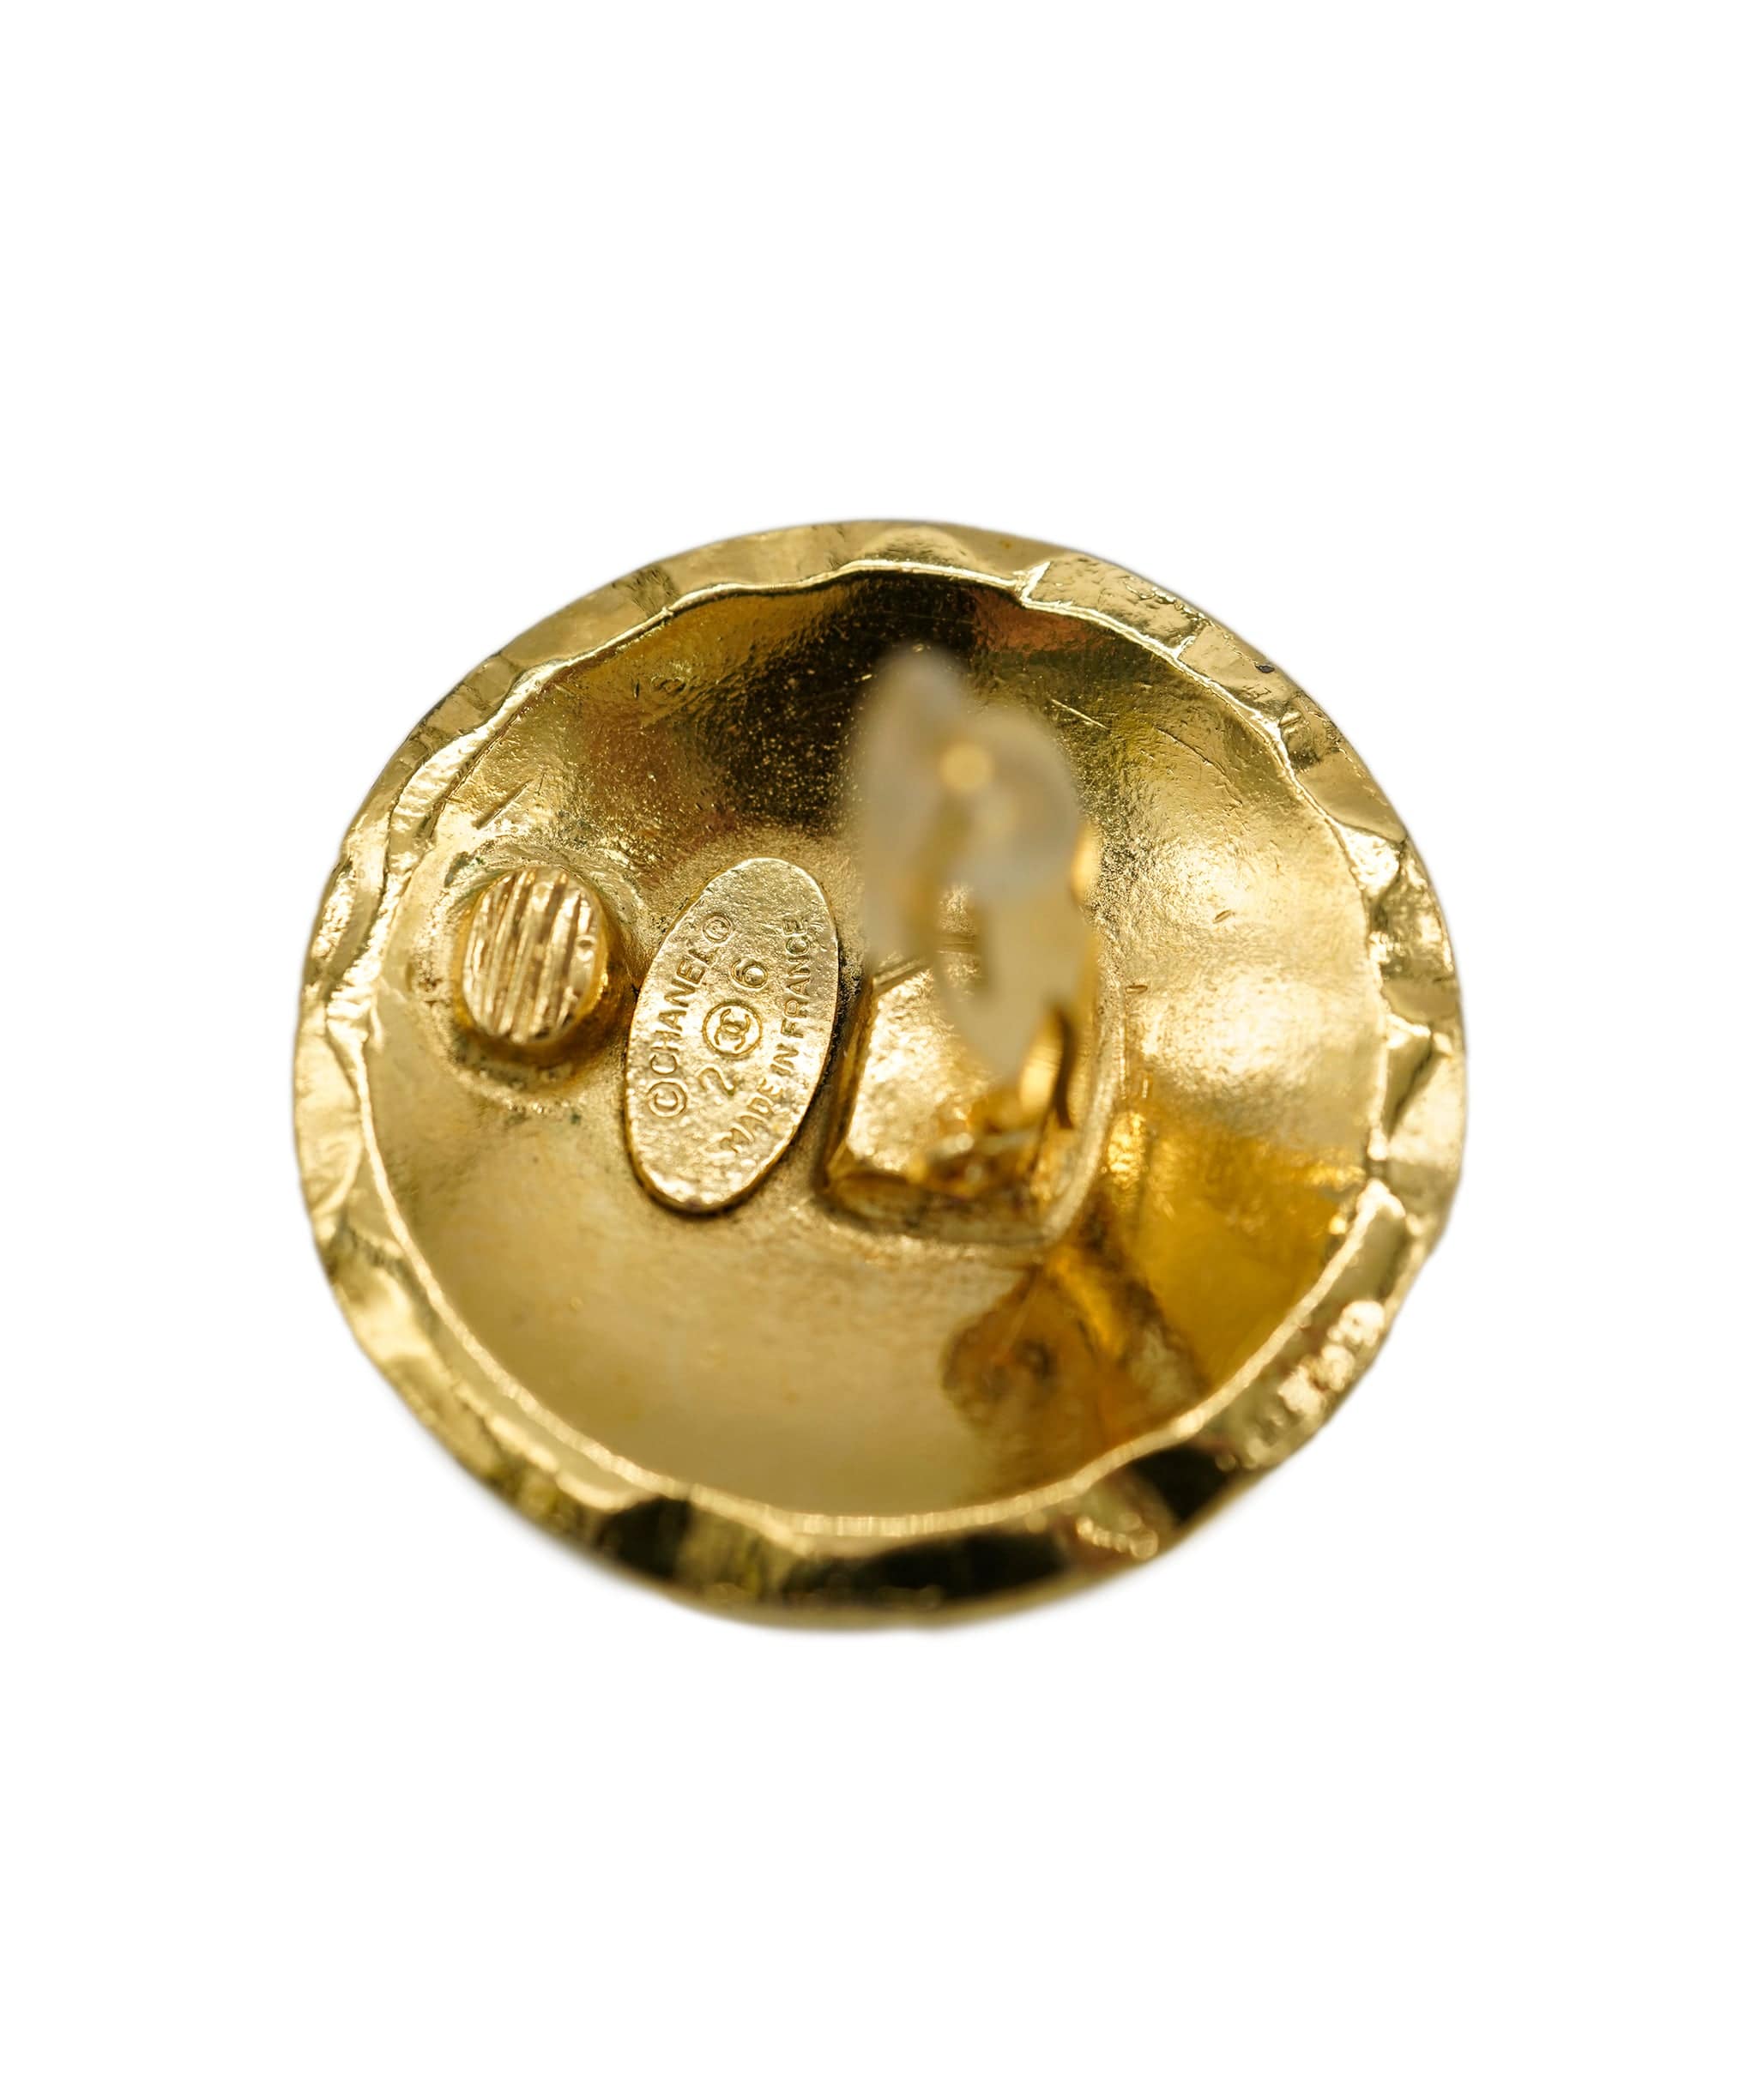 Chanel Chanel gold earrings ASL3993